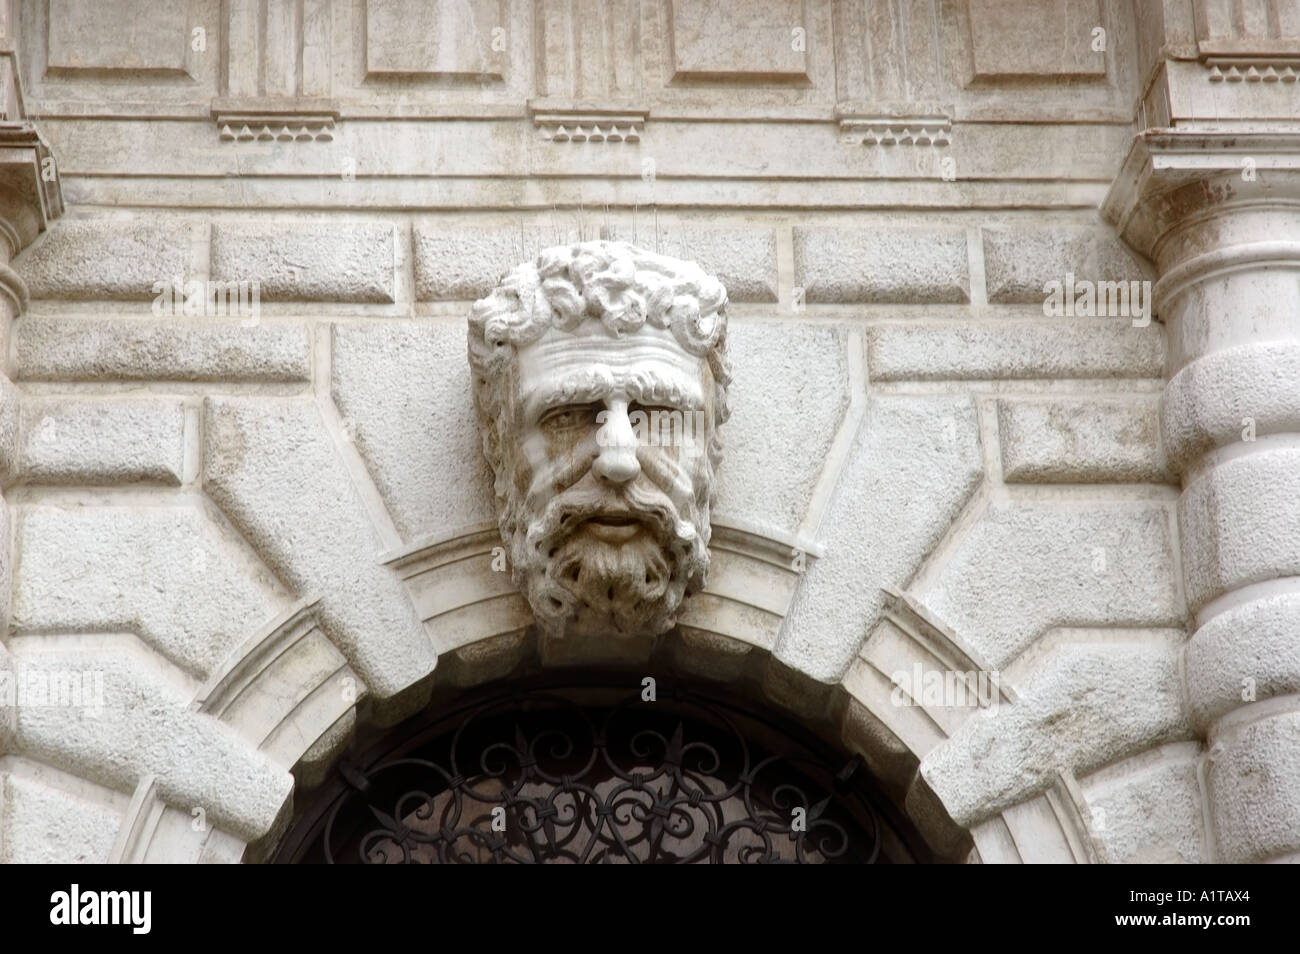 Venezia Italia, dettaglio architettonico, porta di ingresso Scultura a basso rilievo faccia dell'uomo in pietra sulla facciata dell'edificio Foto Stock